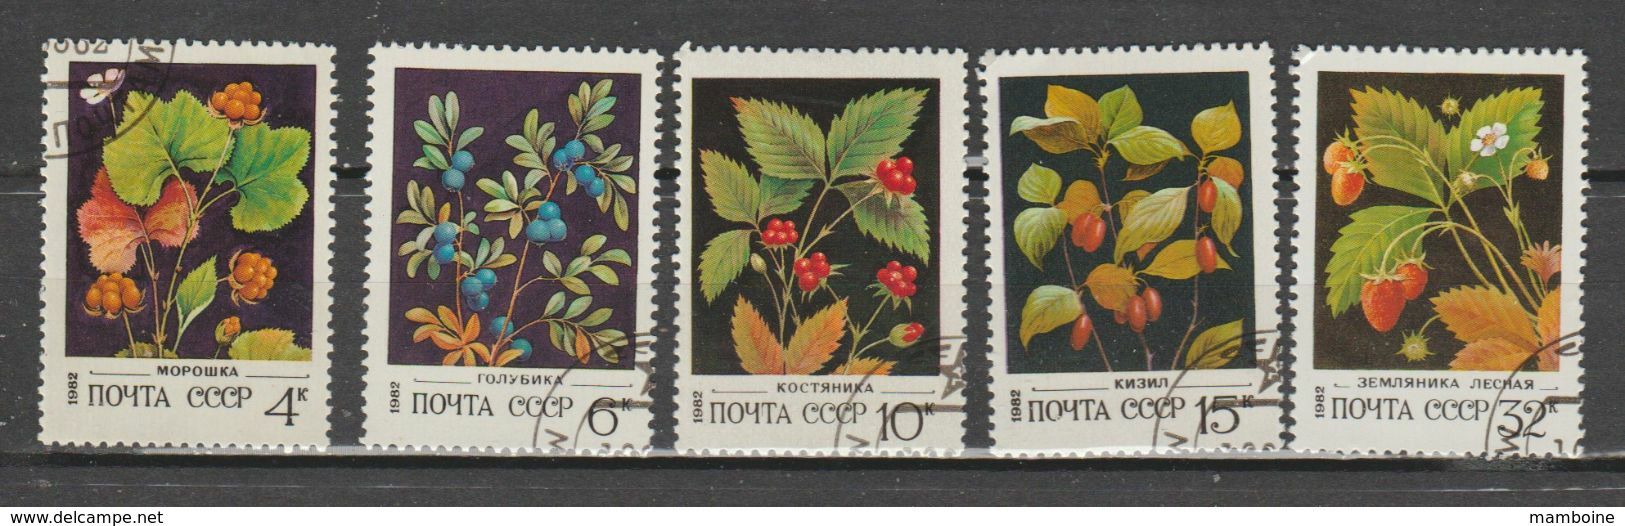 Russie  1982    Flore  N° 4887 à 91  Série Compl. Oblitérée - Usati